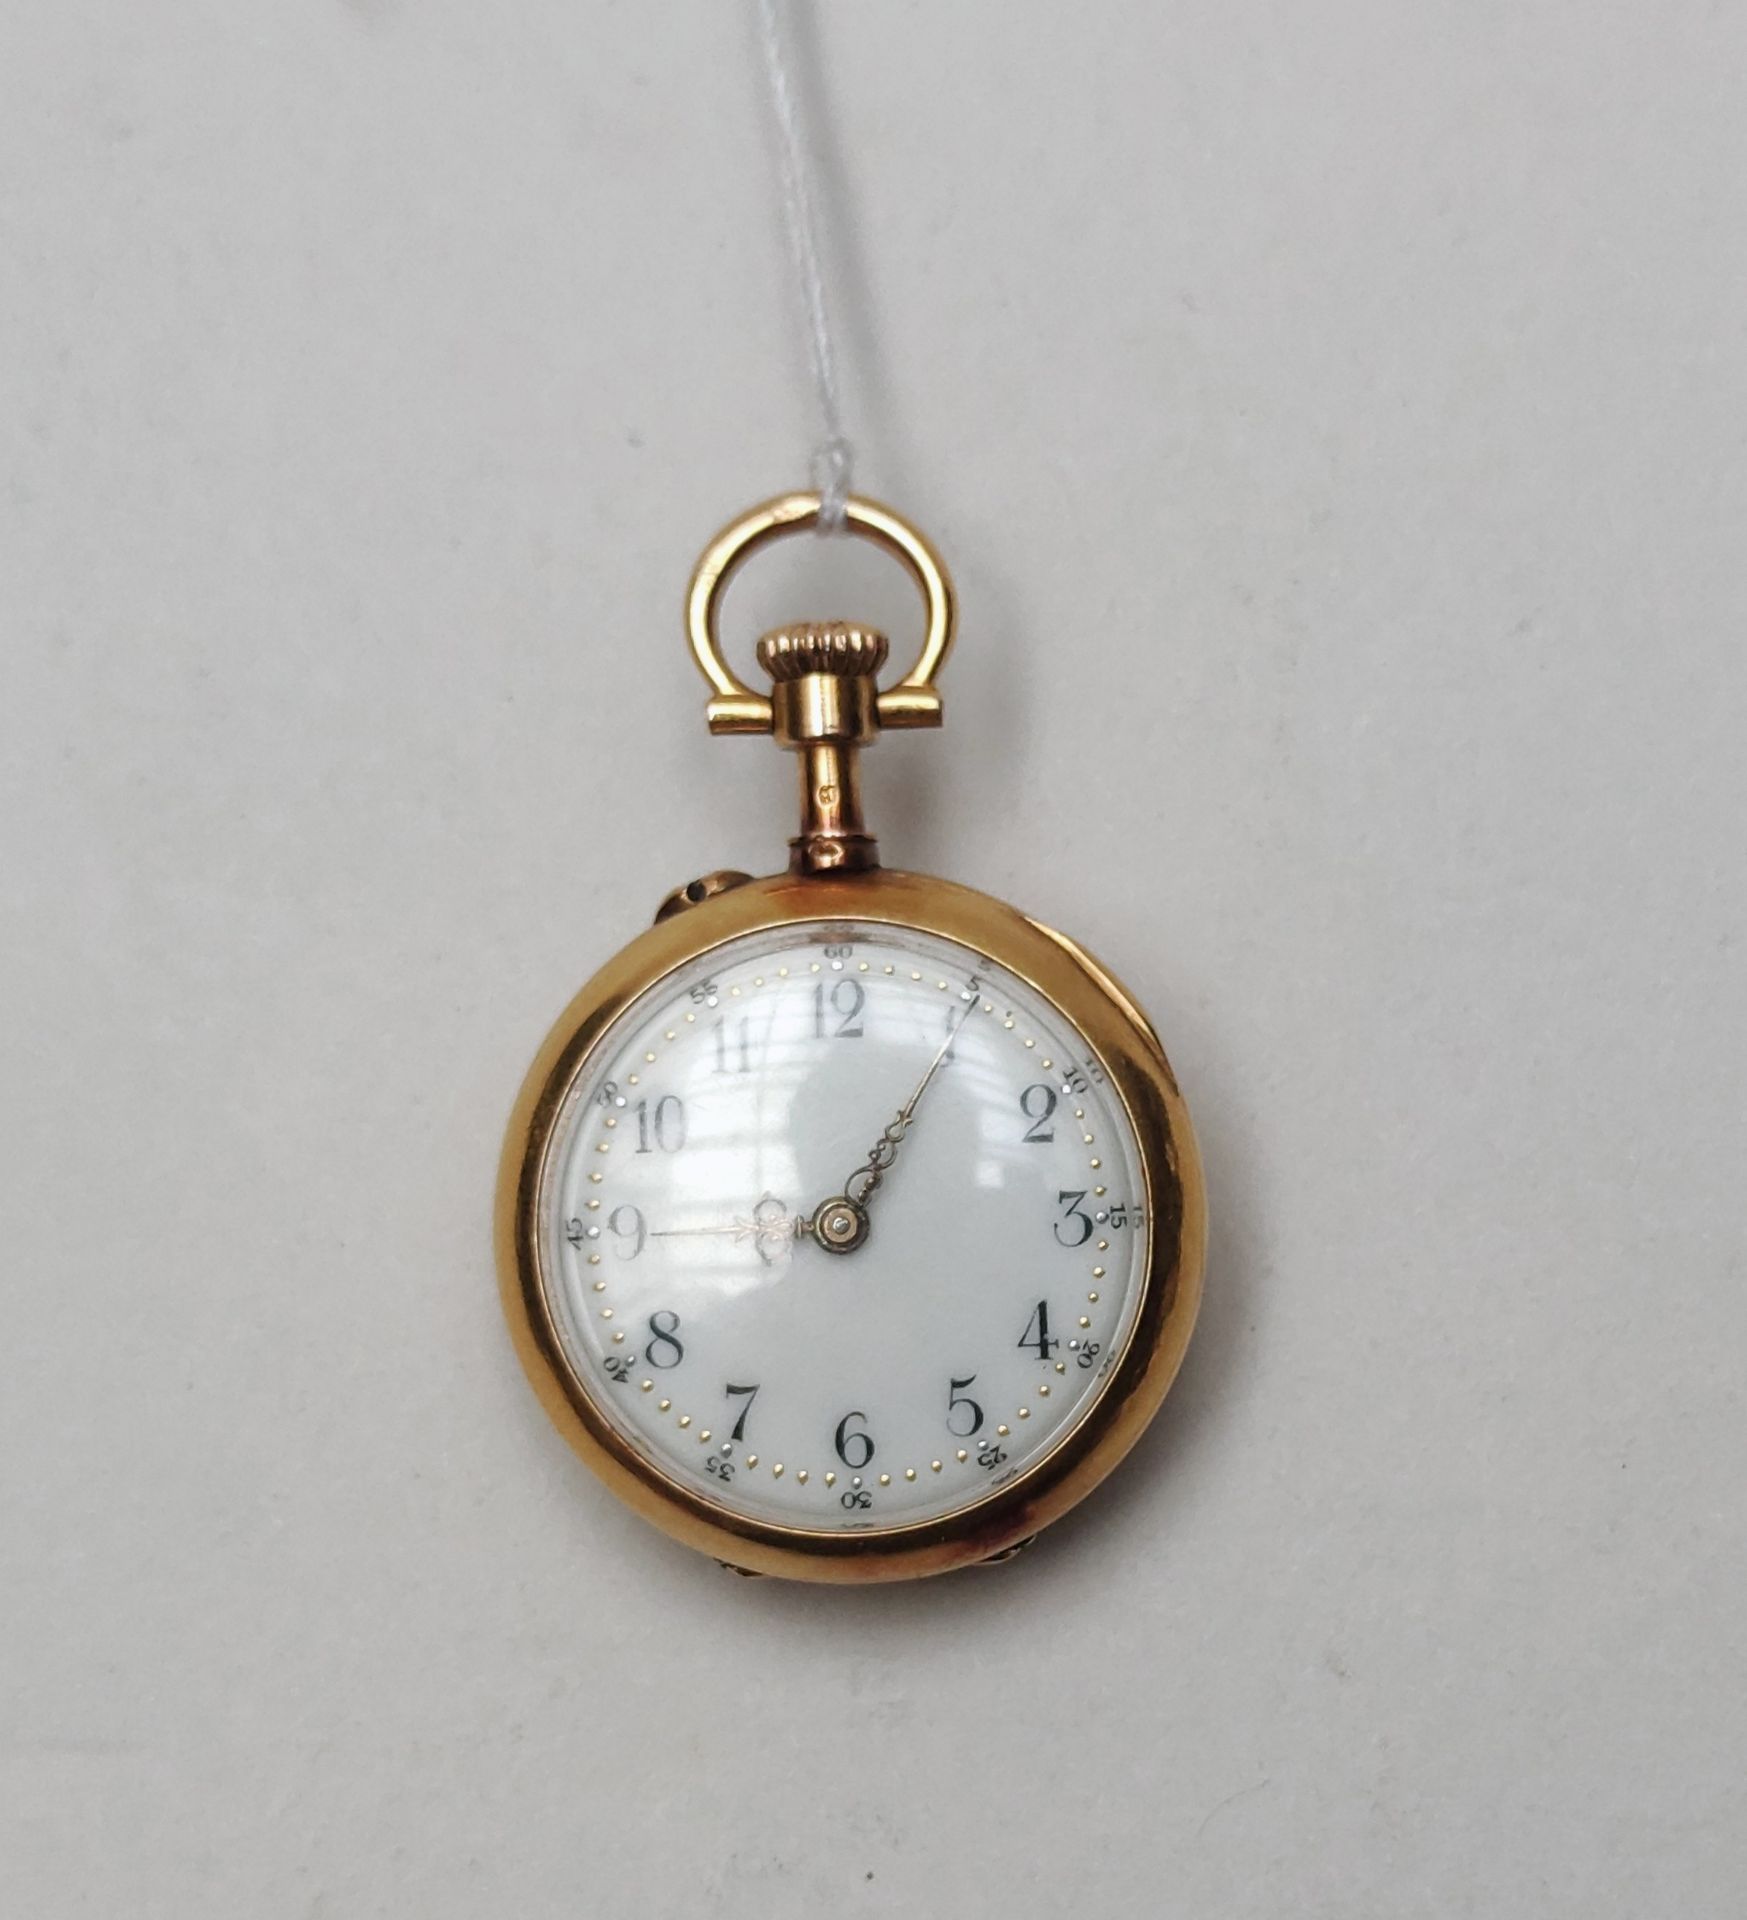 Null Pequeño reloj de bolsillo en oro amarillo 750°/00 

Peso : 18 g